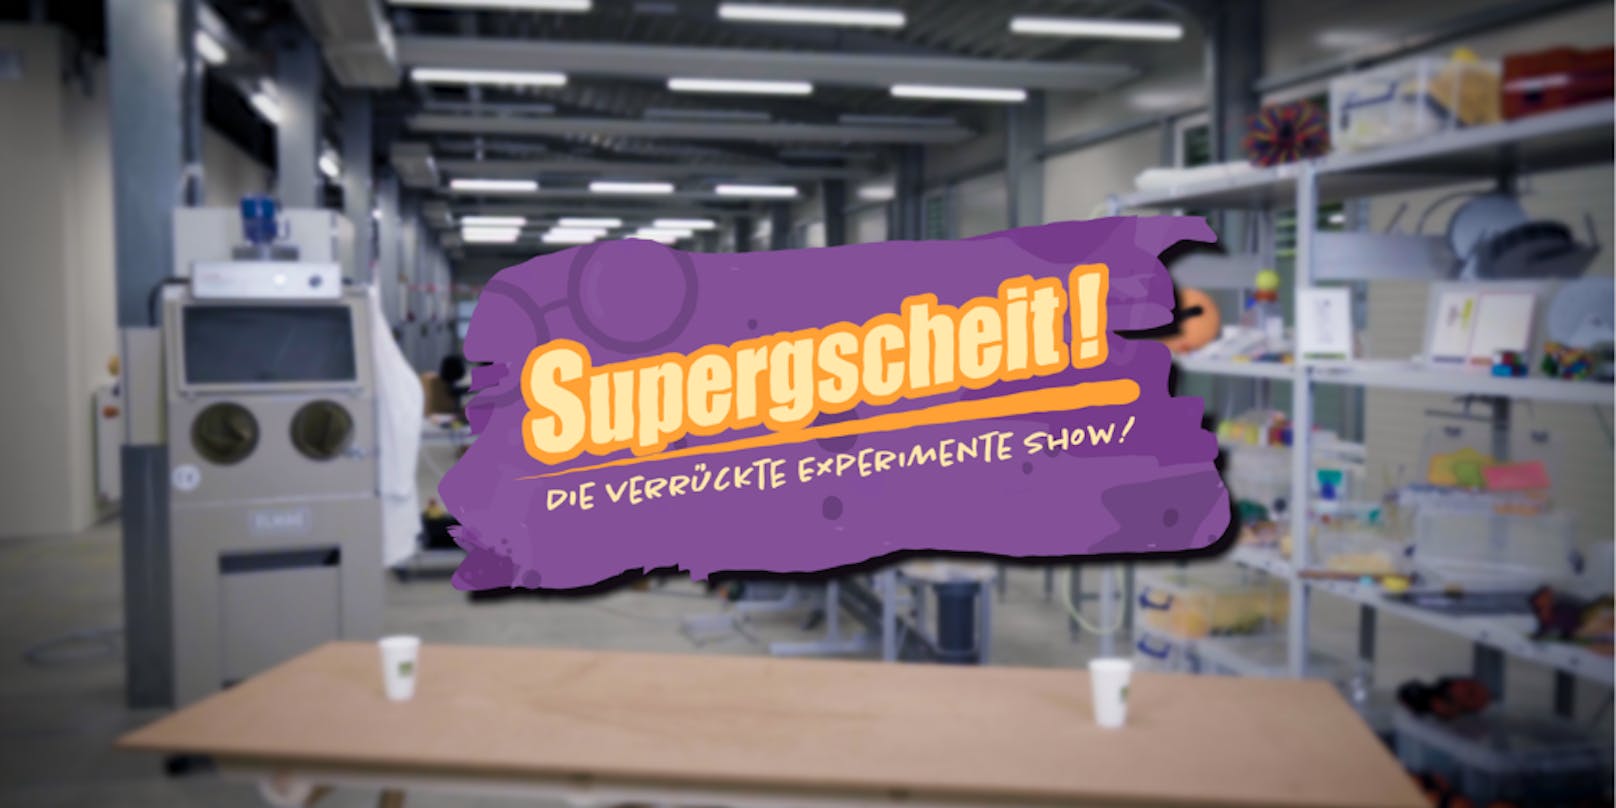 Die Science Show "Supergscheit!" befasst sich in der zweiten Folge mit dem Thema Luft.